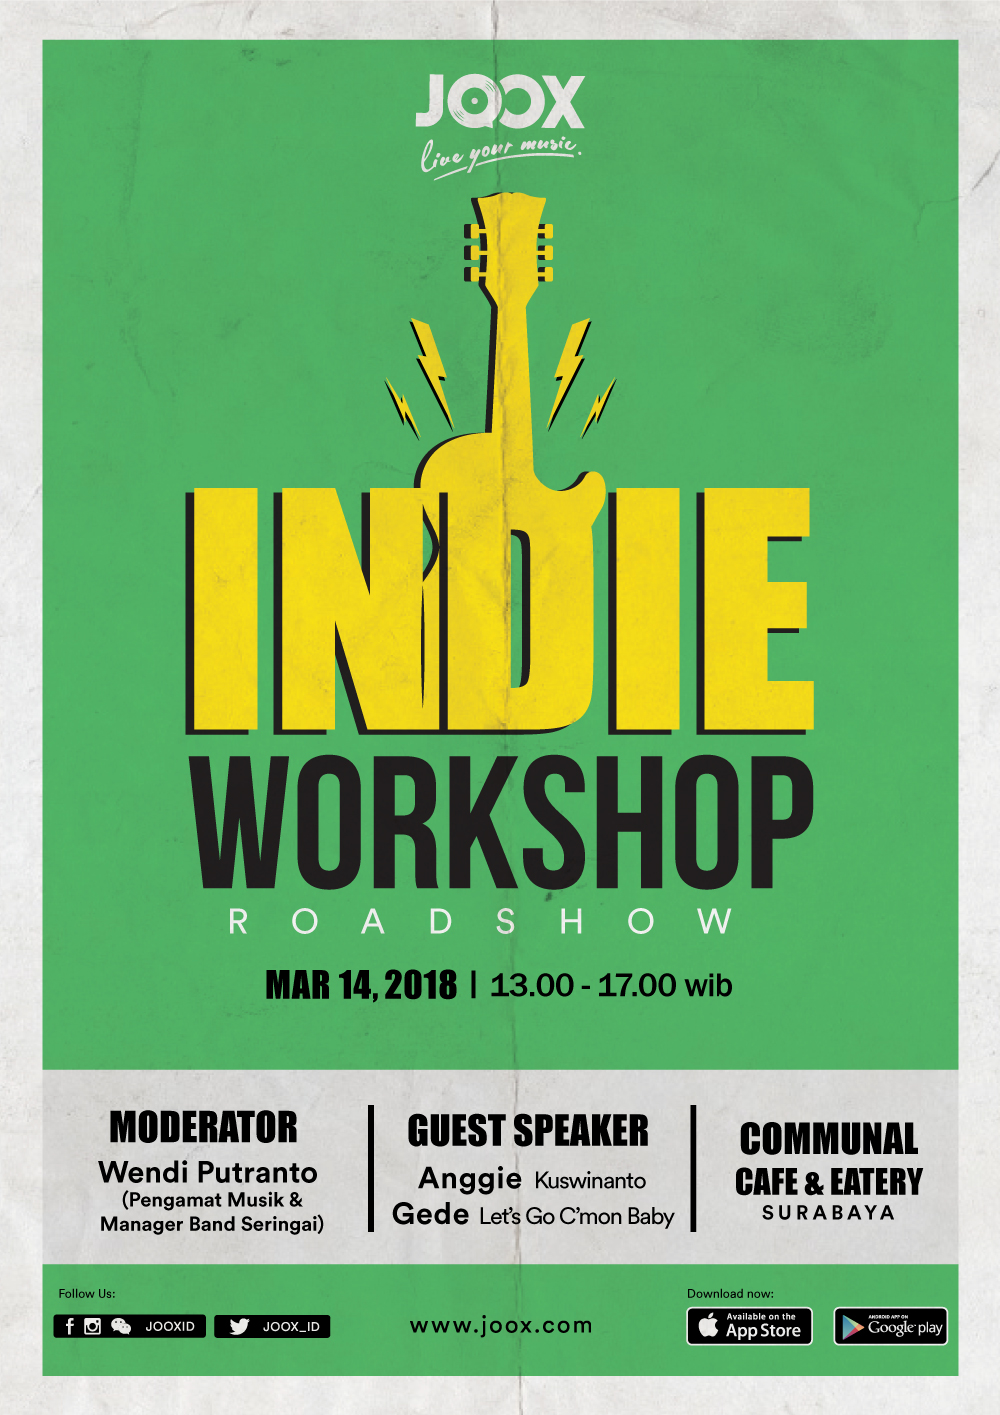 JOOX Indie Workshop Roadshow Siap Digelar